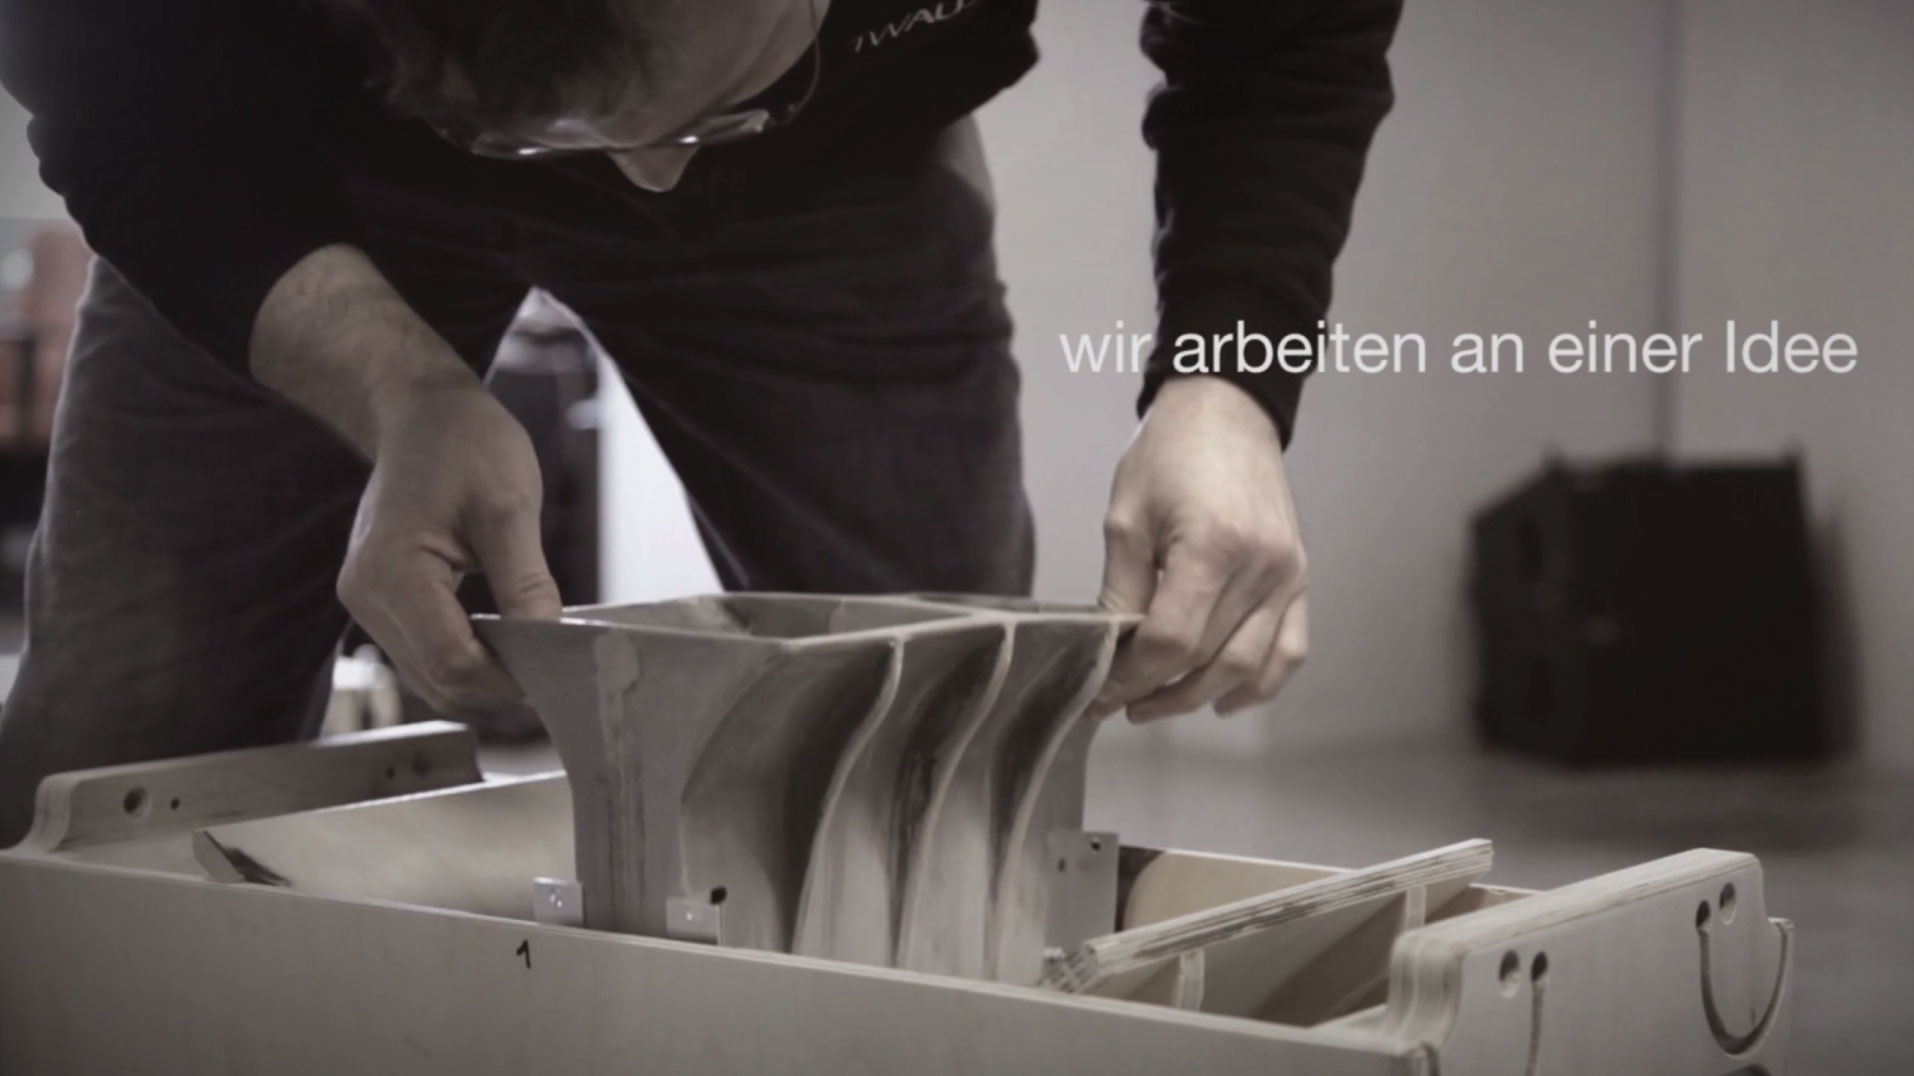 75a entwickelt für TW AUDiO aus Ludwigsburg einen Imagefilm